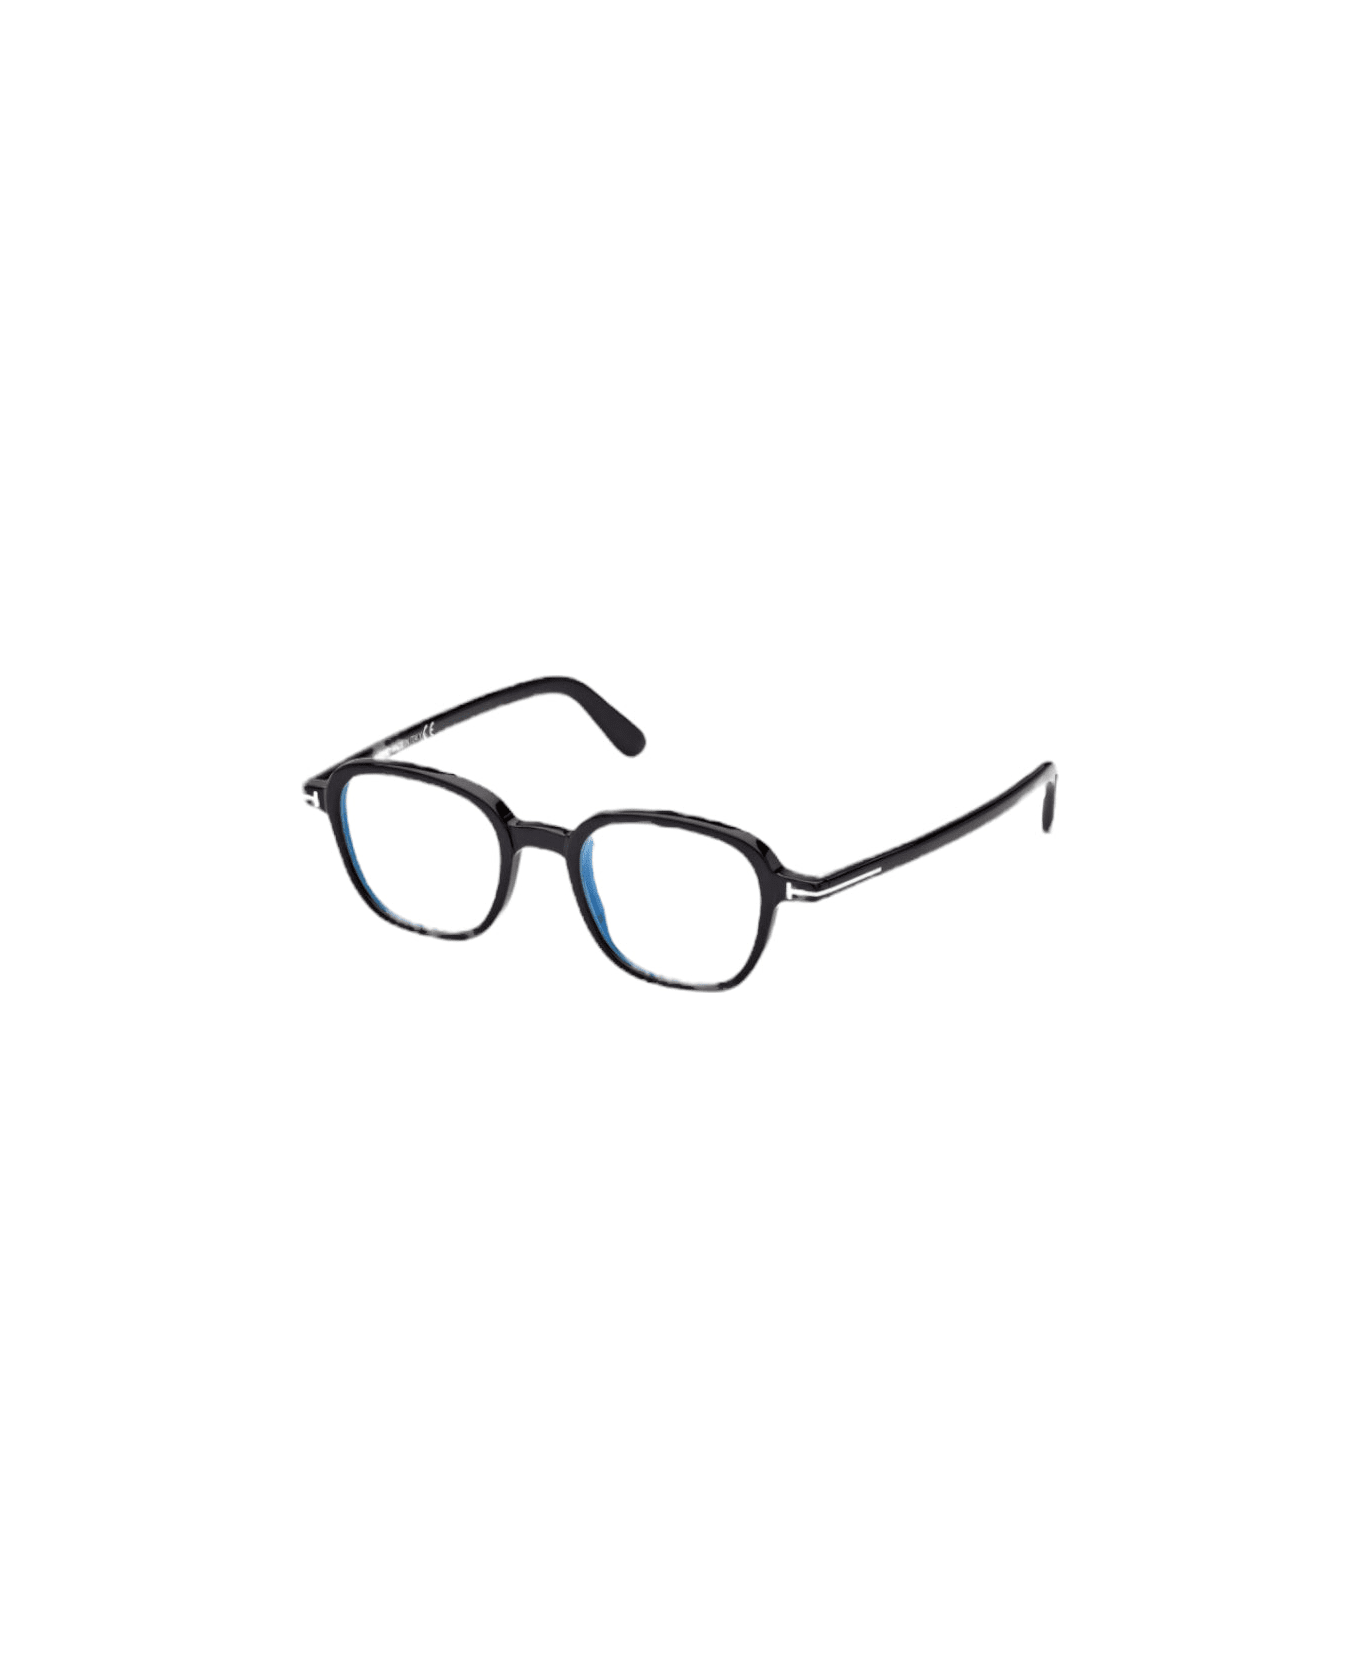 Tom Ford Eyewear Ft5837 - Black Glasses